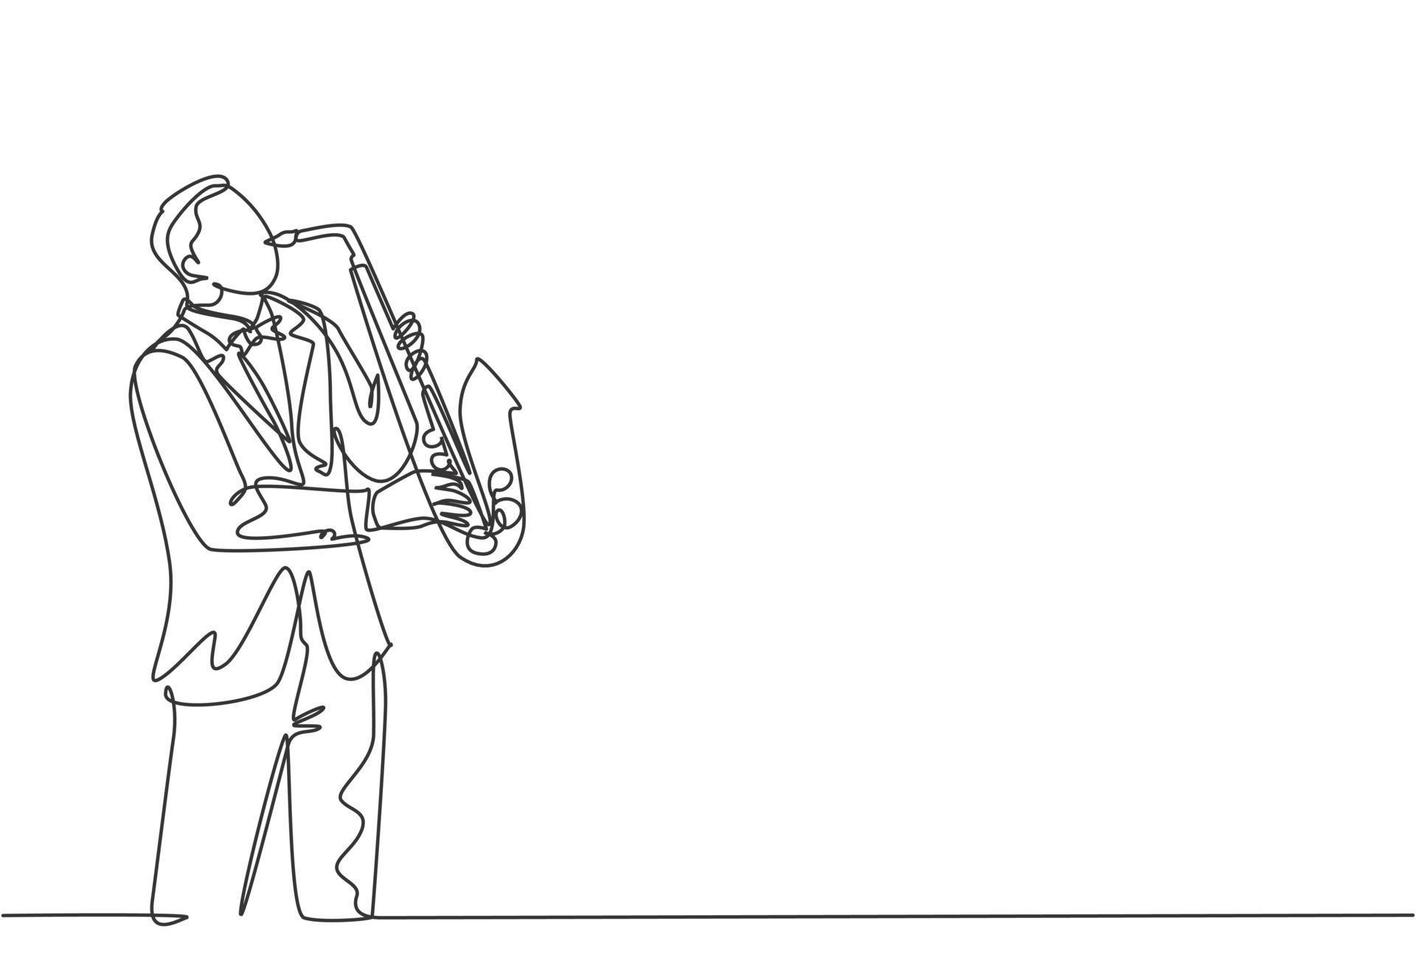 einzelne durchgehende Strichzeichnung eines jungen glücklichen männlichen Saxophonisten mit Hut, der auf einem Musikkonzert Saxophon spielt. Musiker-Künstler-Performance-Konzept eine Linie zeichnen Design-Vektor-Illustration vektor